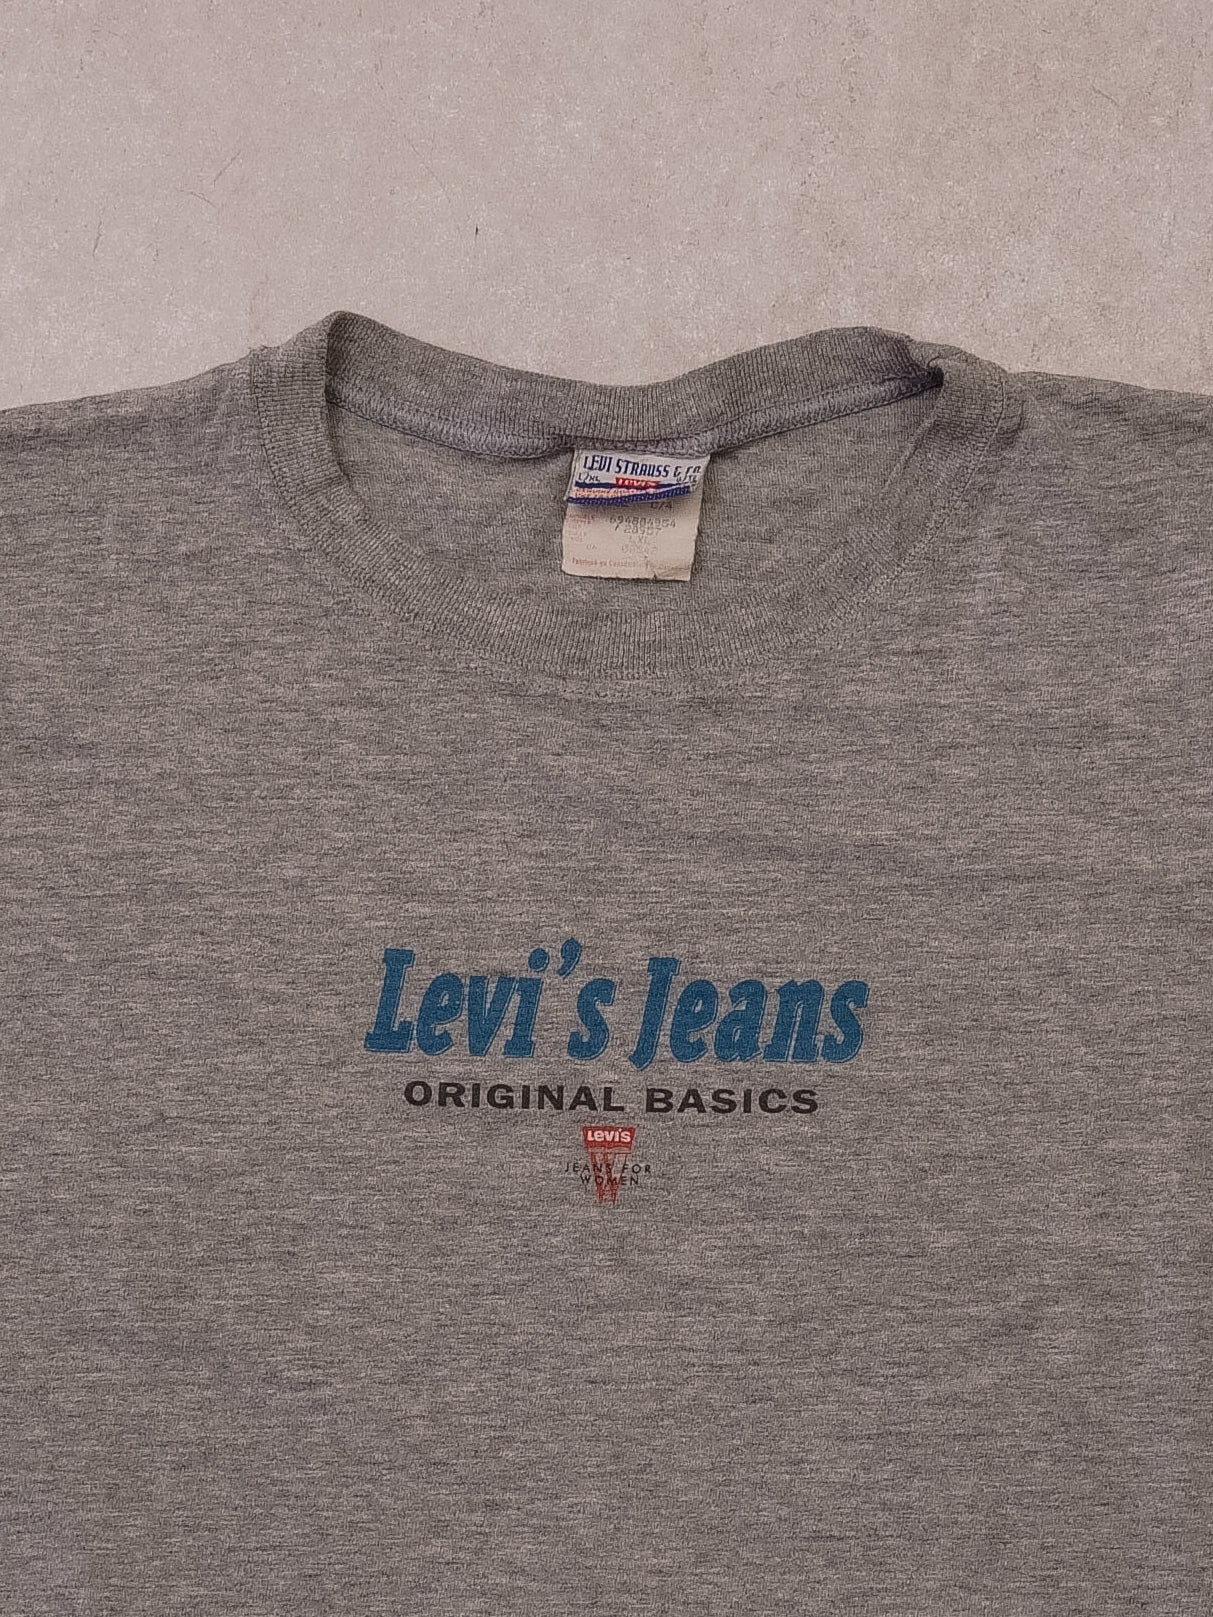 Vintage 90s Grey Levi's Jeans Single Stitch Boxy Tee